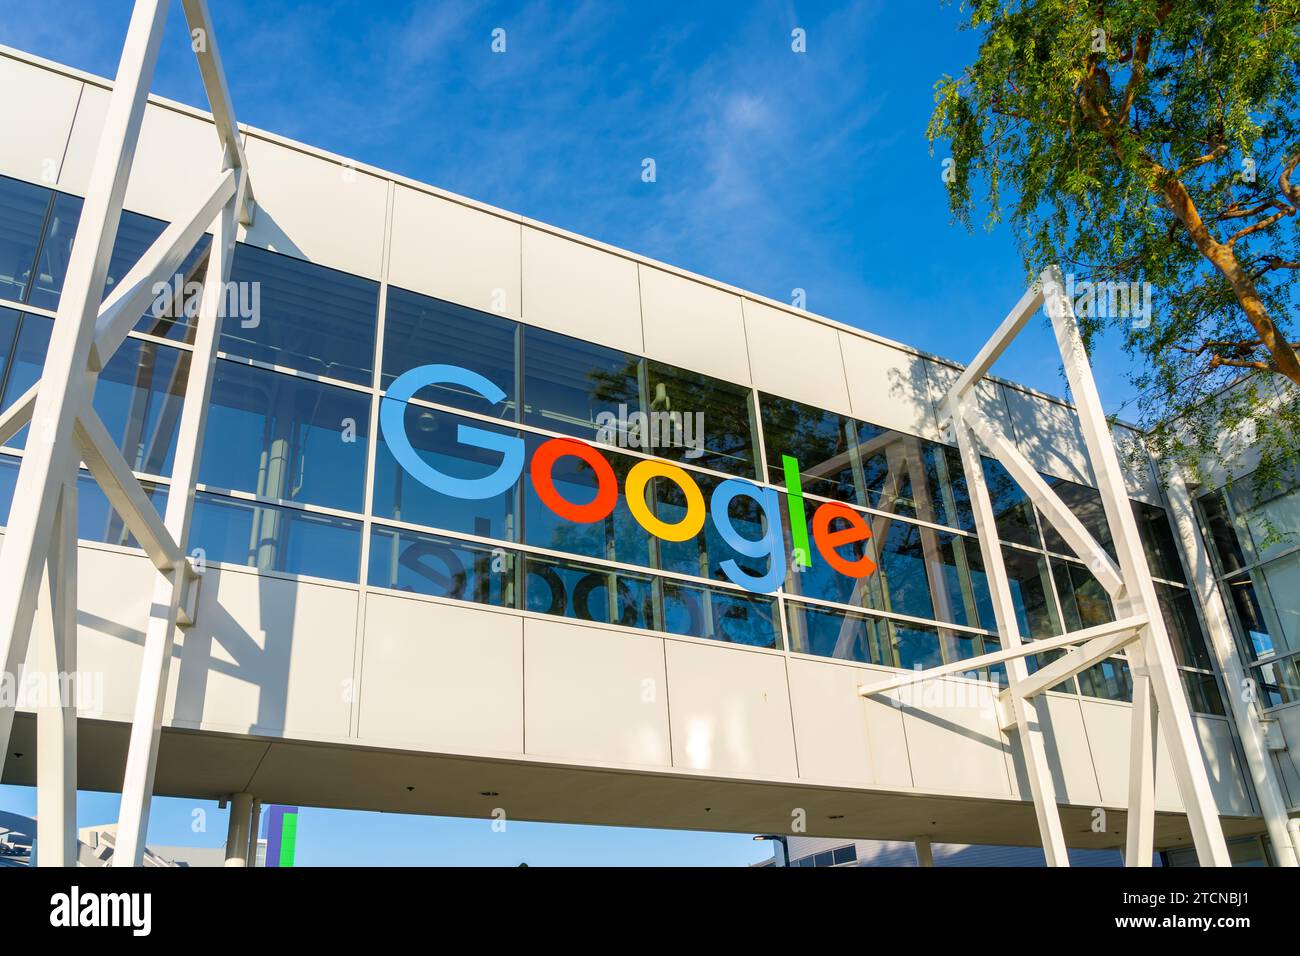 Primo piano del logo Google sull'edificio di Mountain View, California, USA Foto Stock